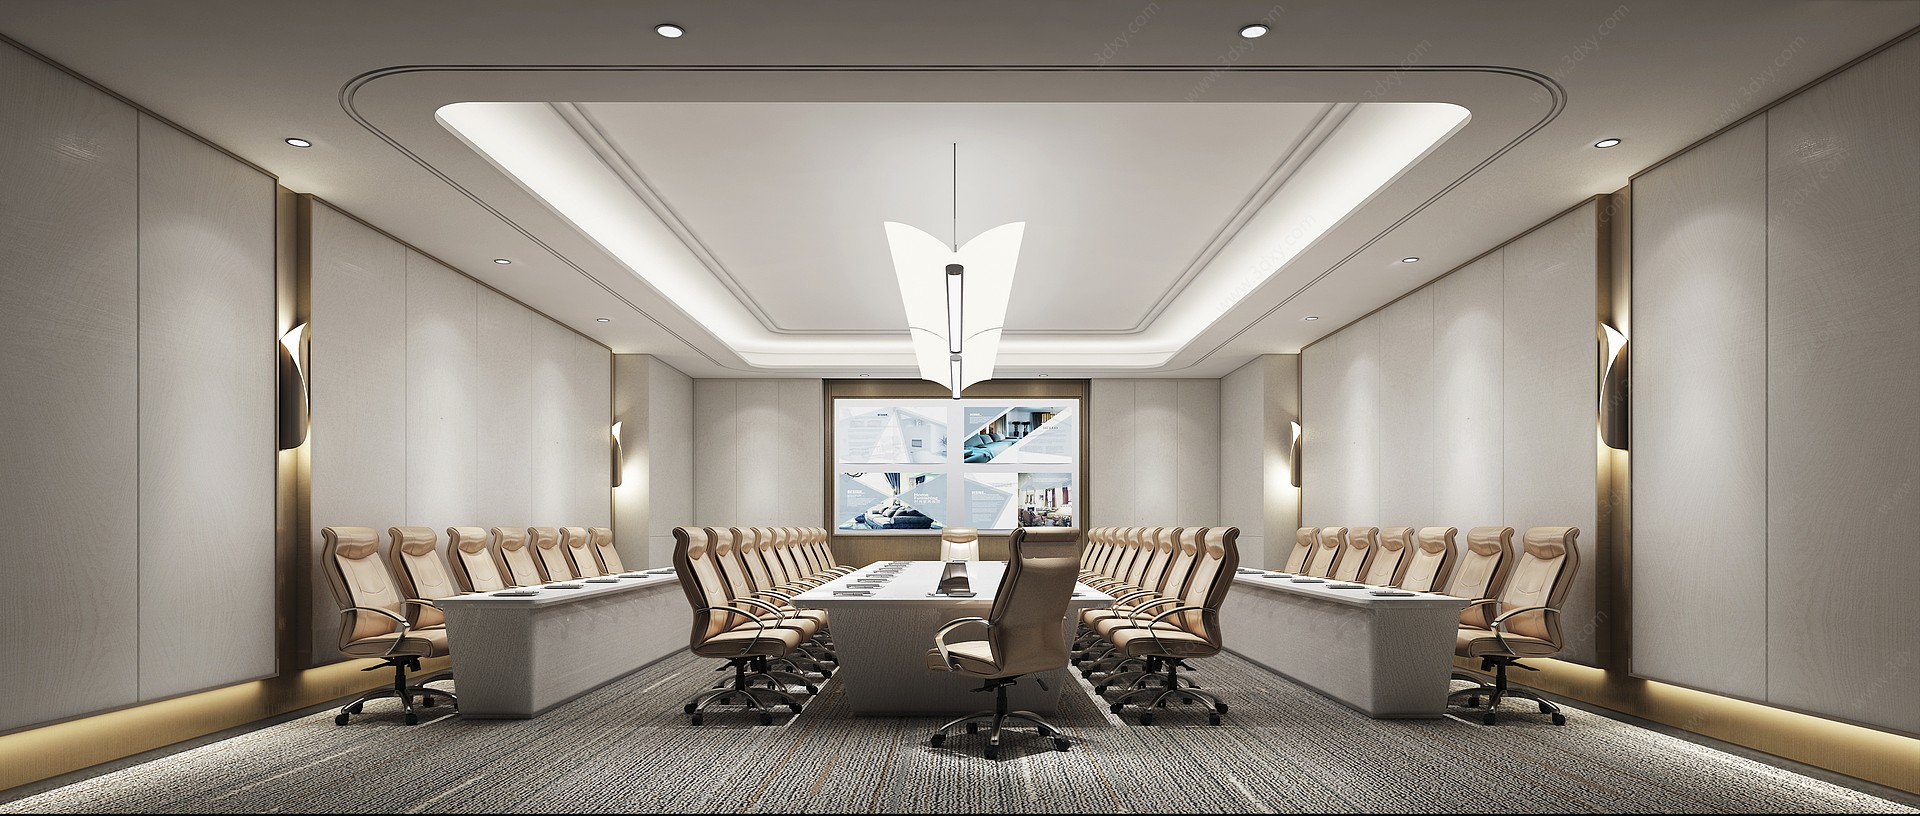 现代会议室吊灯壁灯3D模型